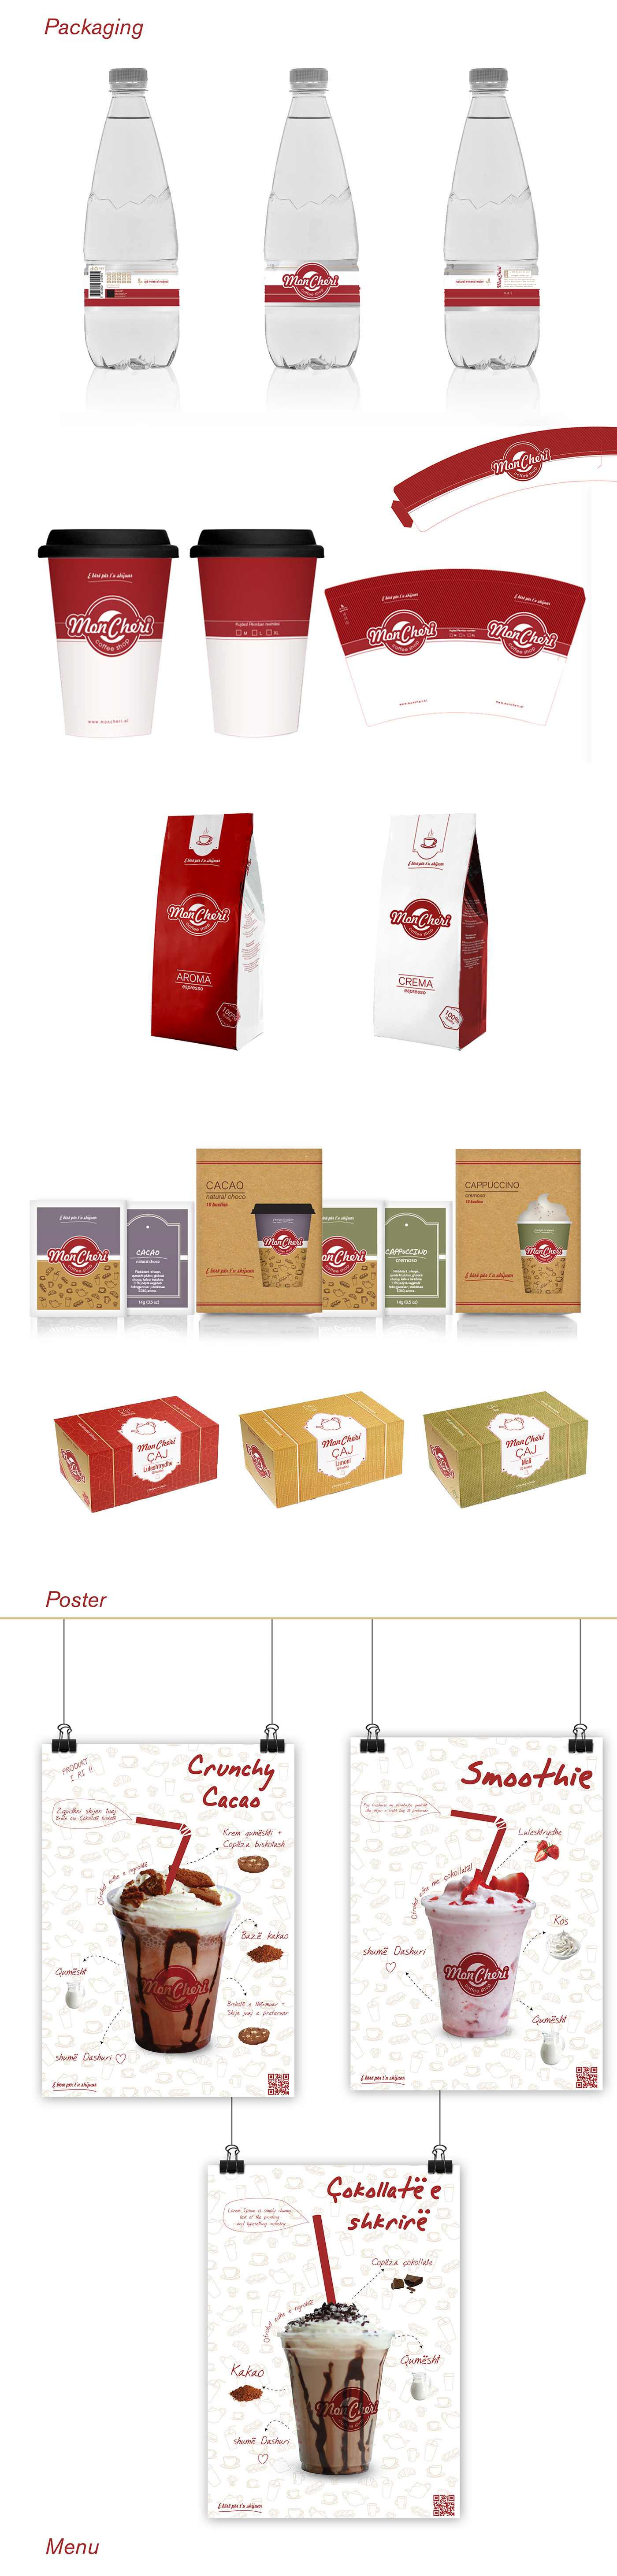 coffee shop Coffee coffee packaging menu poster redesign